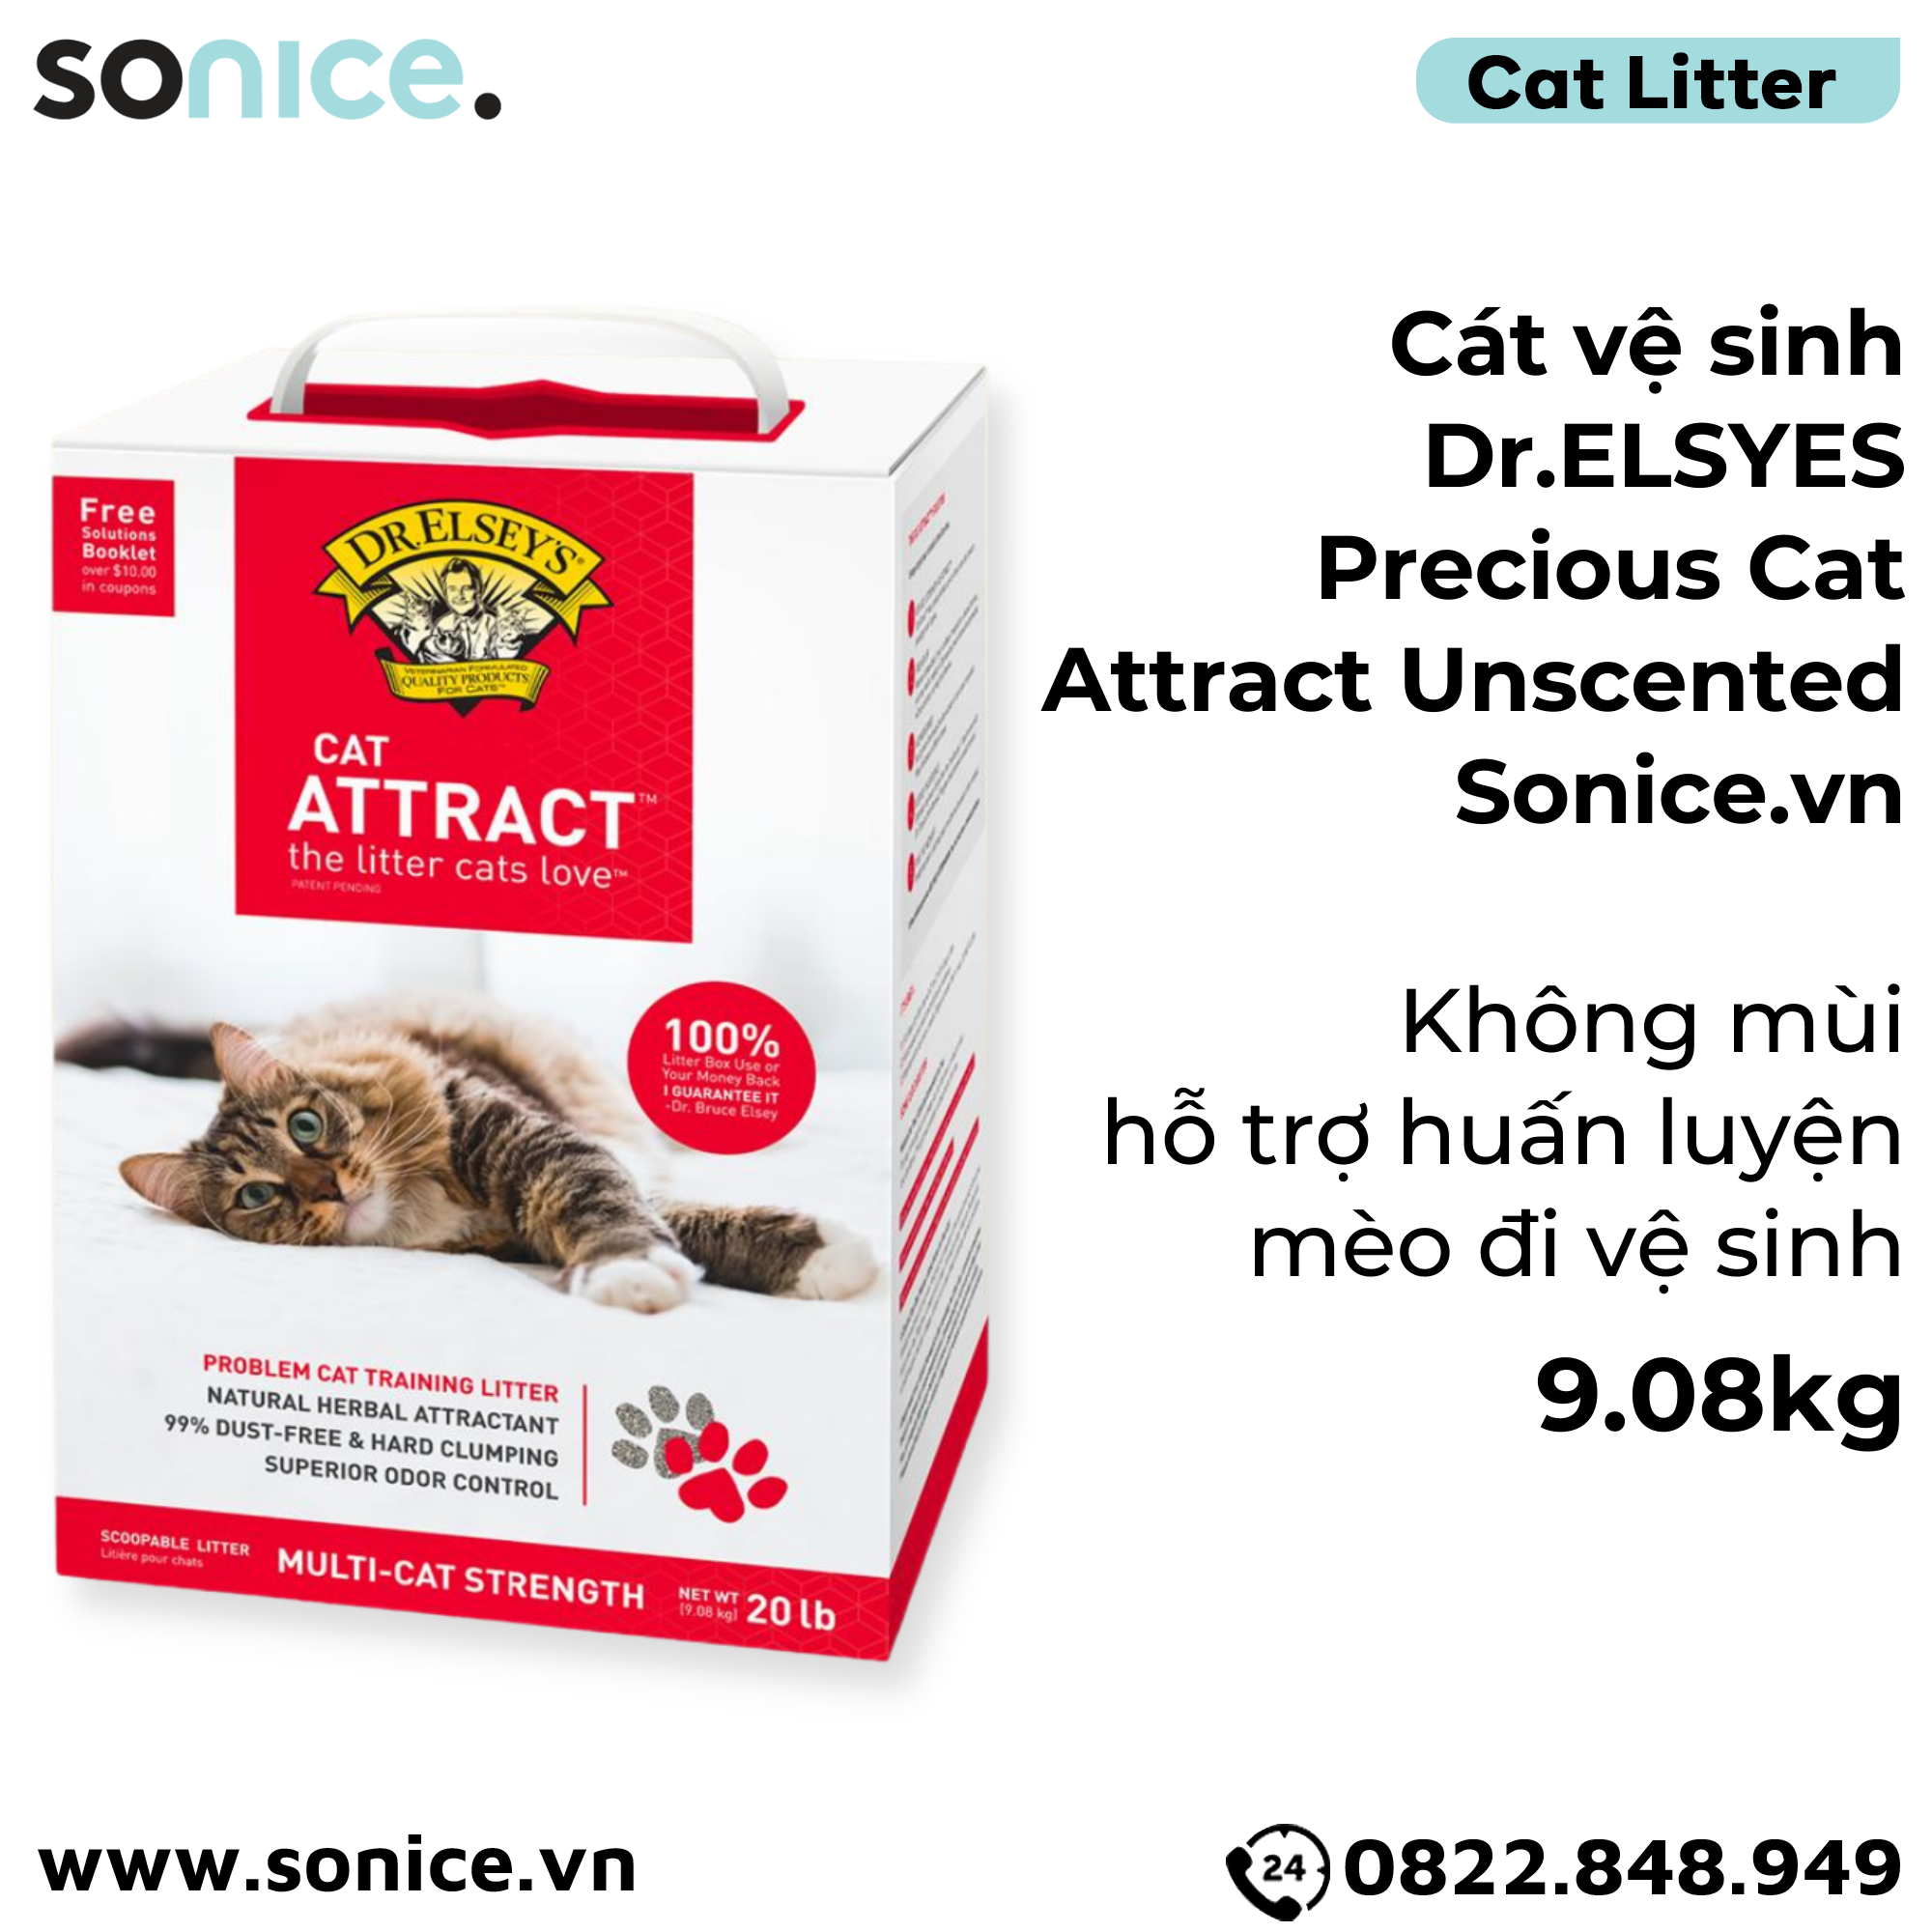  Cát vệ sinh Dr.ELSYES Precious Cat Attract Unscented 9.08kg - Không mùi, hỗ trợ huấn luyện mèo đi vệ sinh SONICE. 